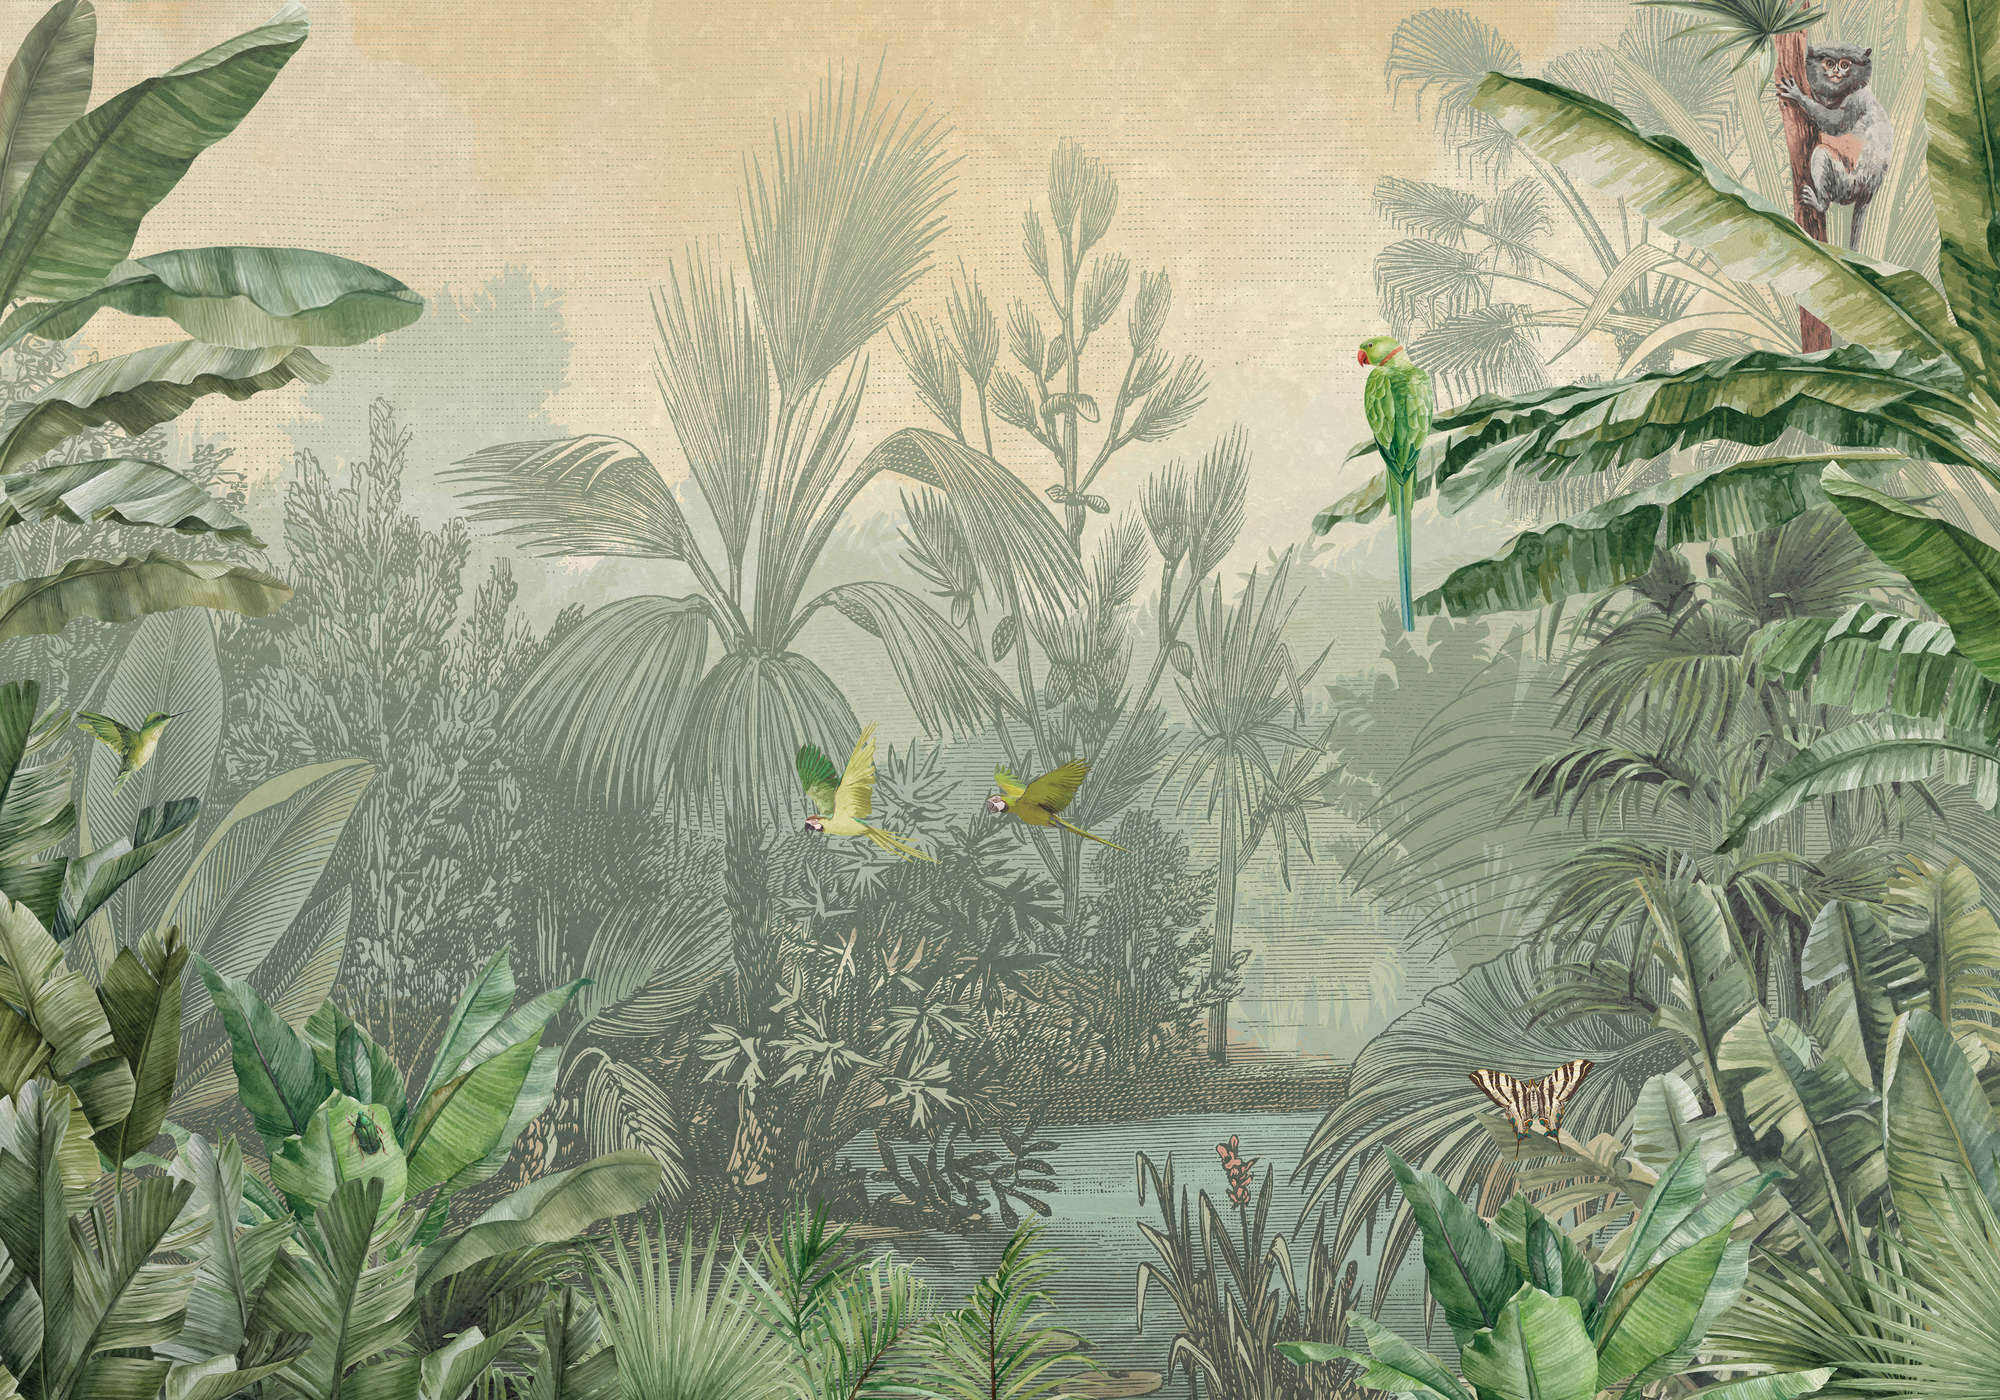             Papel pintado de estilo dibujo de palmeras y loros en la selva verde
        